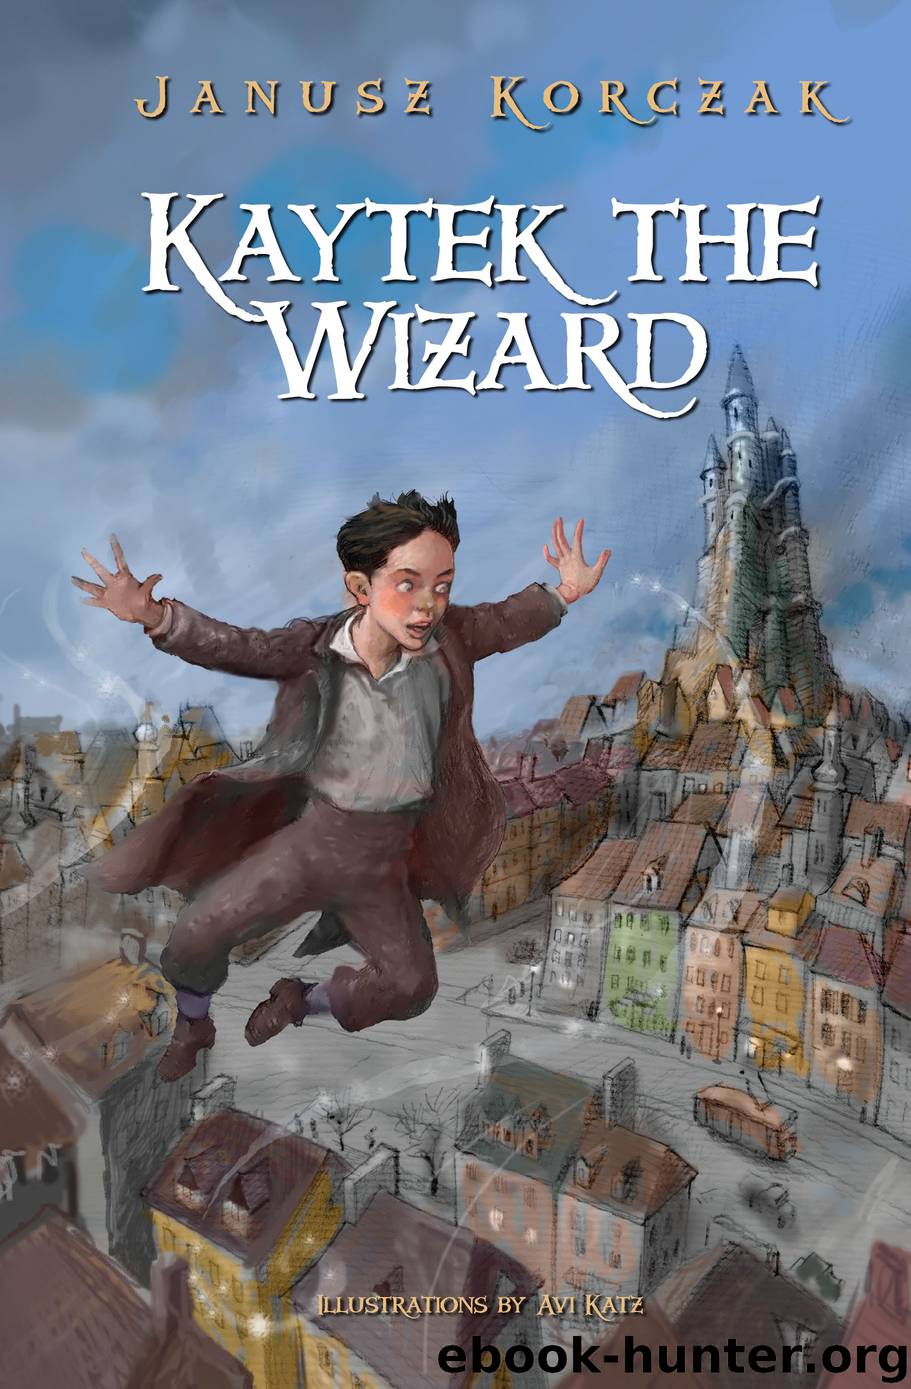 Kaytek the Wizard by Janusz Korczak